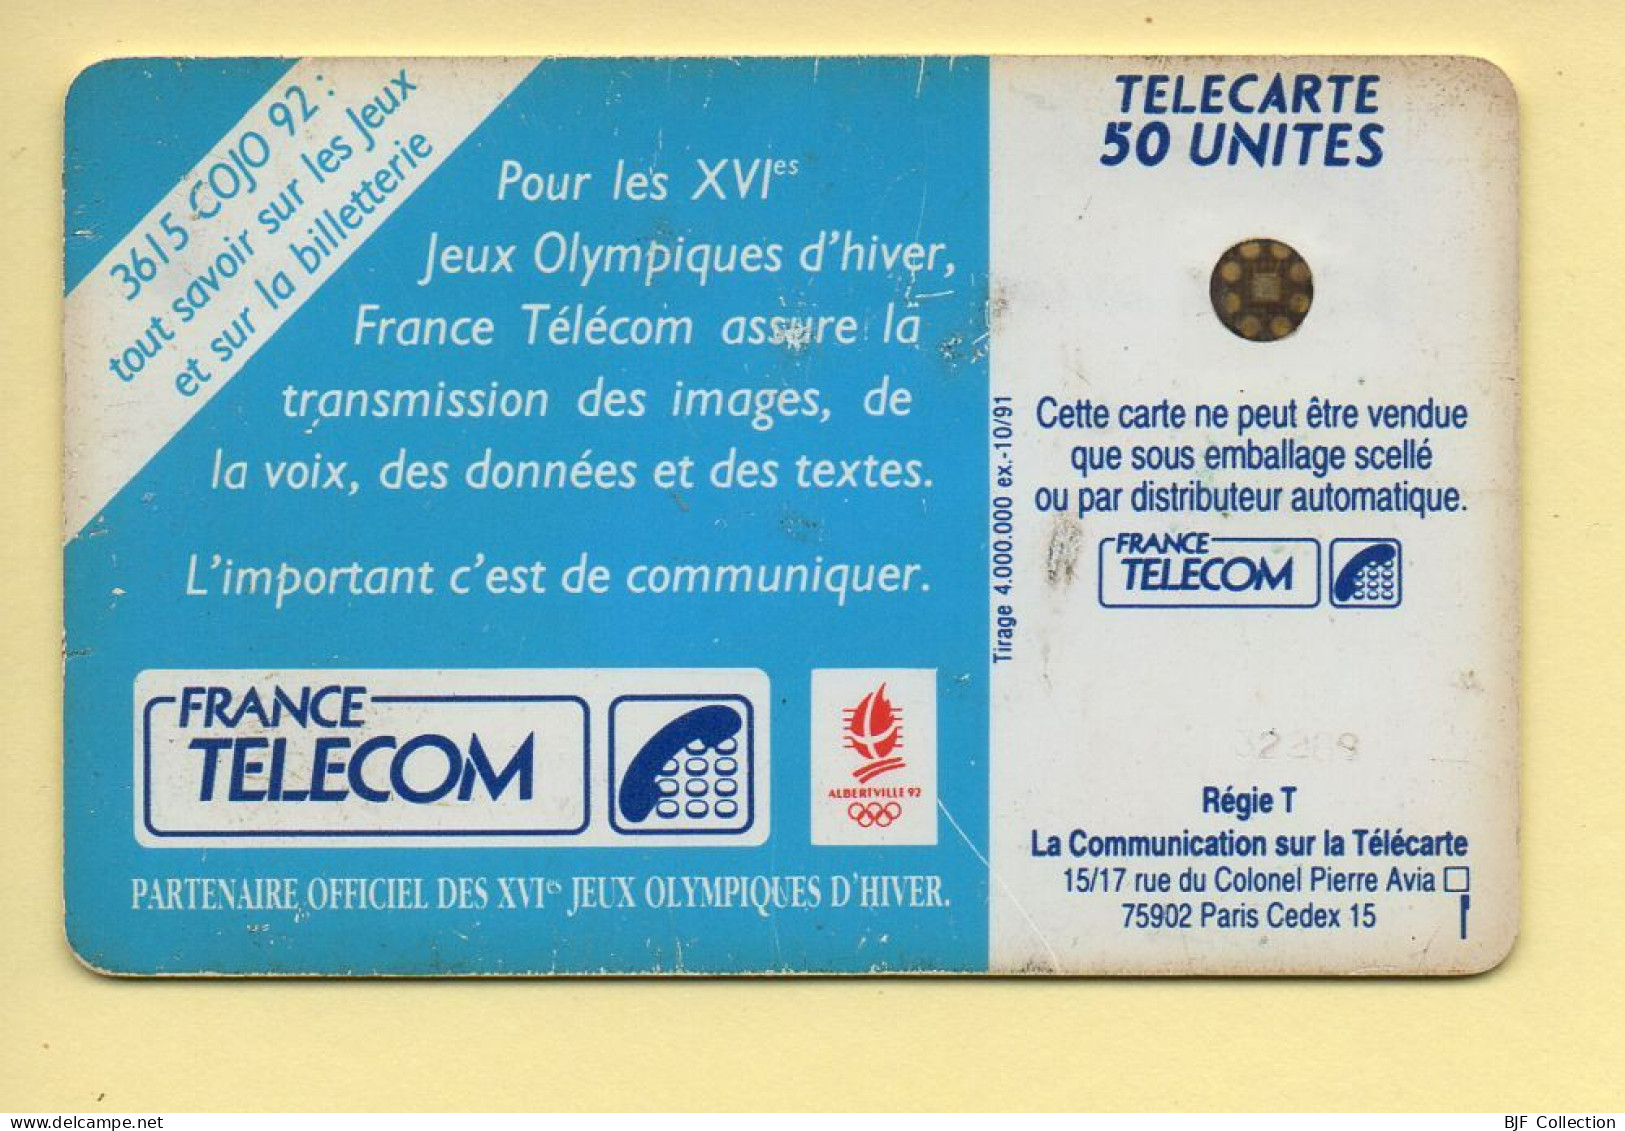 Télécarte 1991 : JOUEUR DE HOCKEY / 50 Unités / Numéro 32289 / 10-91 / Jeux Olympiques D'Hiver ALBERTVILLE 92 - 1991